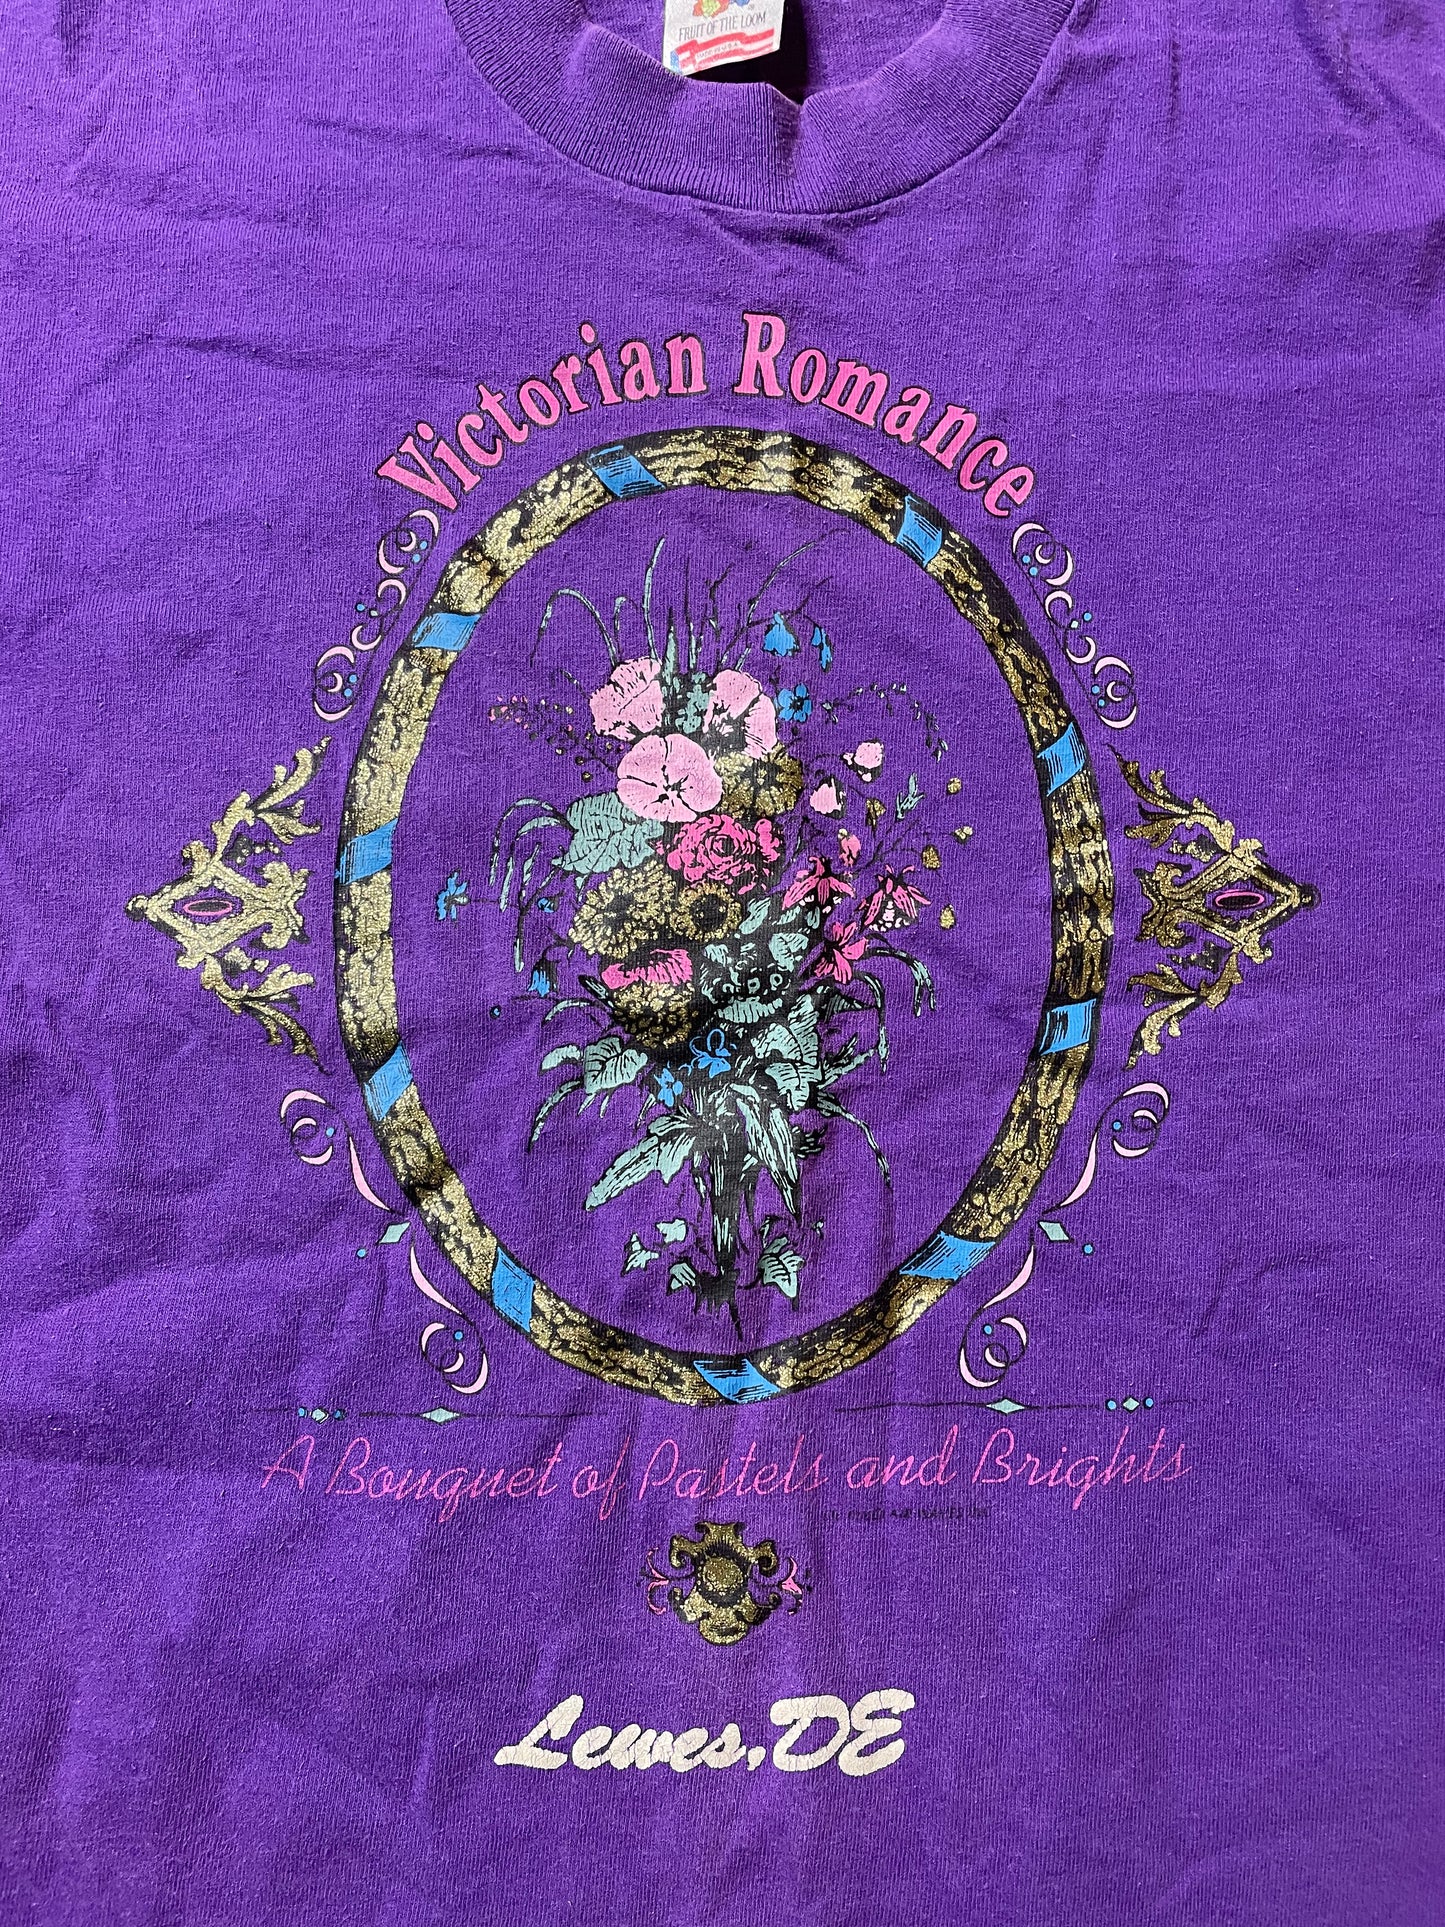 1990s Victorian Romance Tee